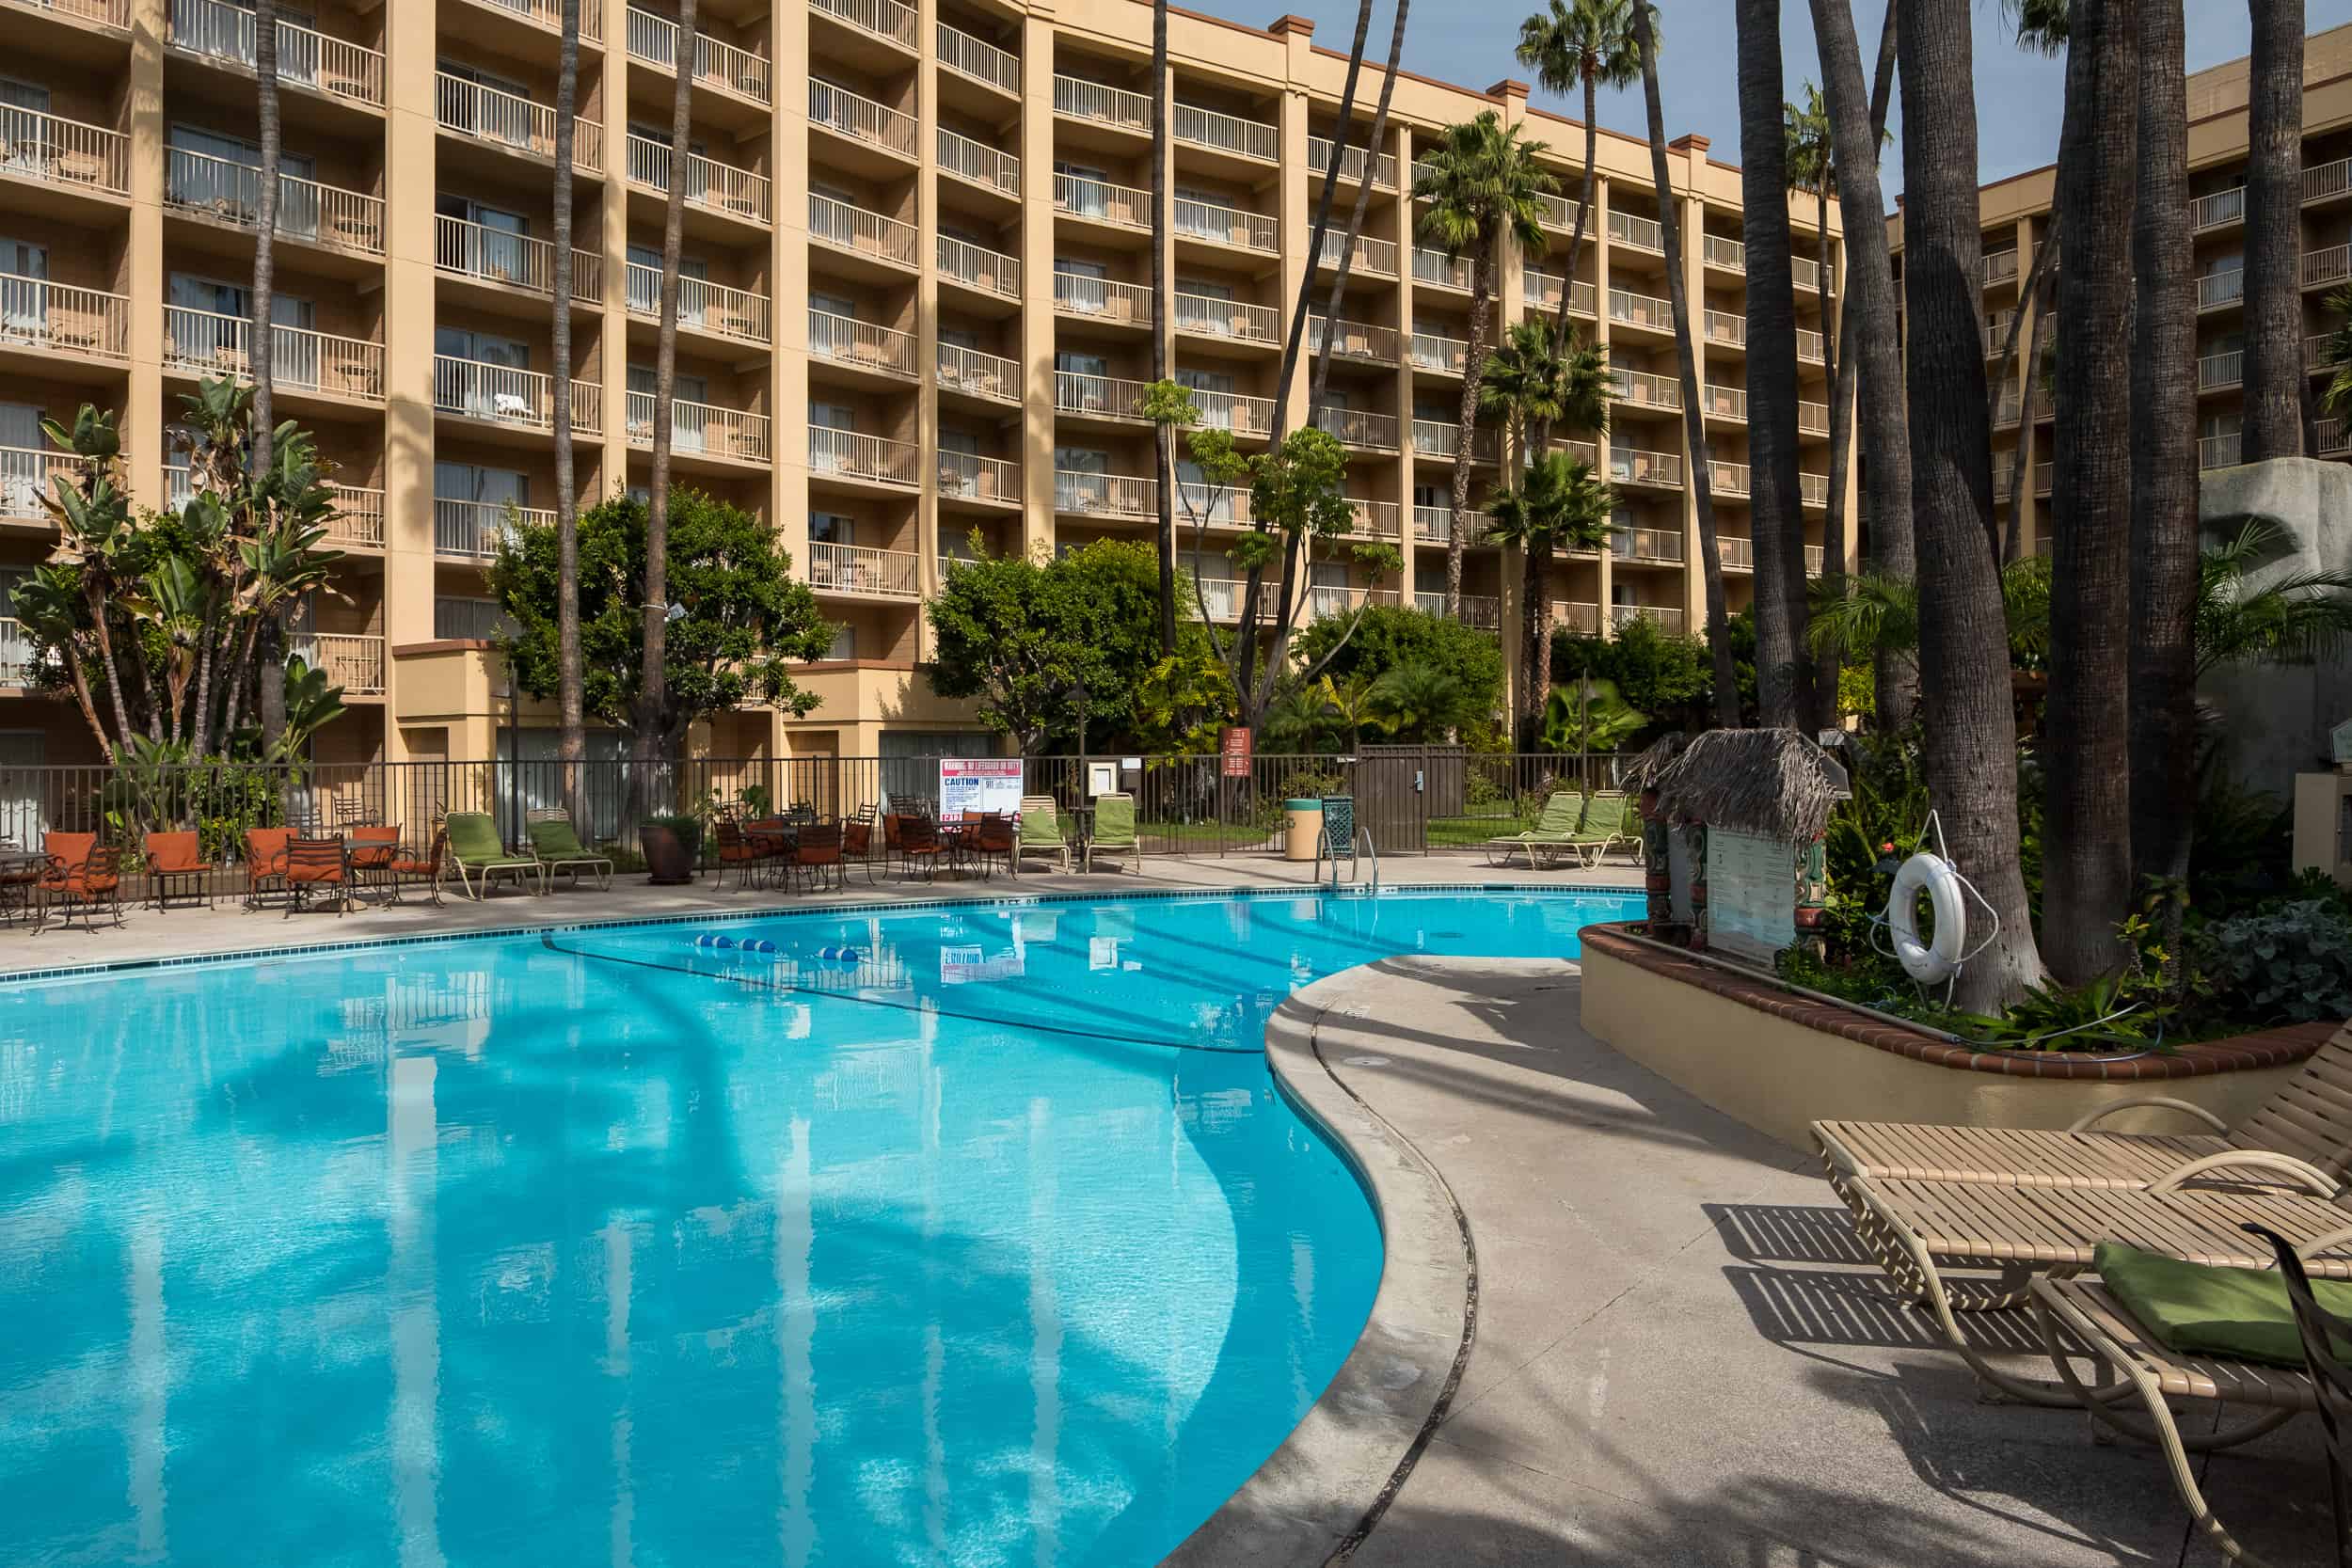 San Diego Hotel Crowne Plaza Hanalei Mission Valley DSCF0510